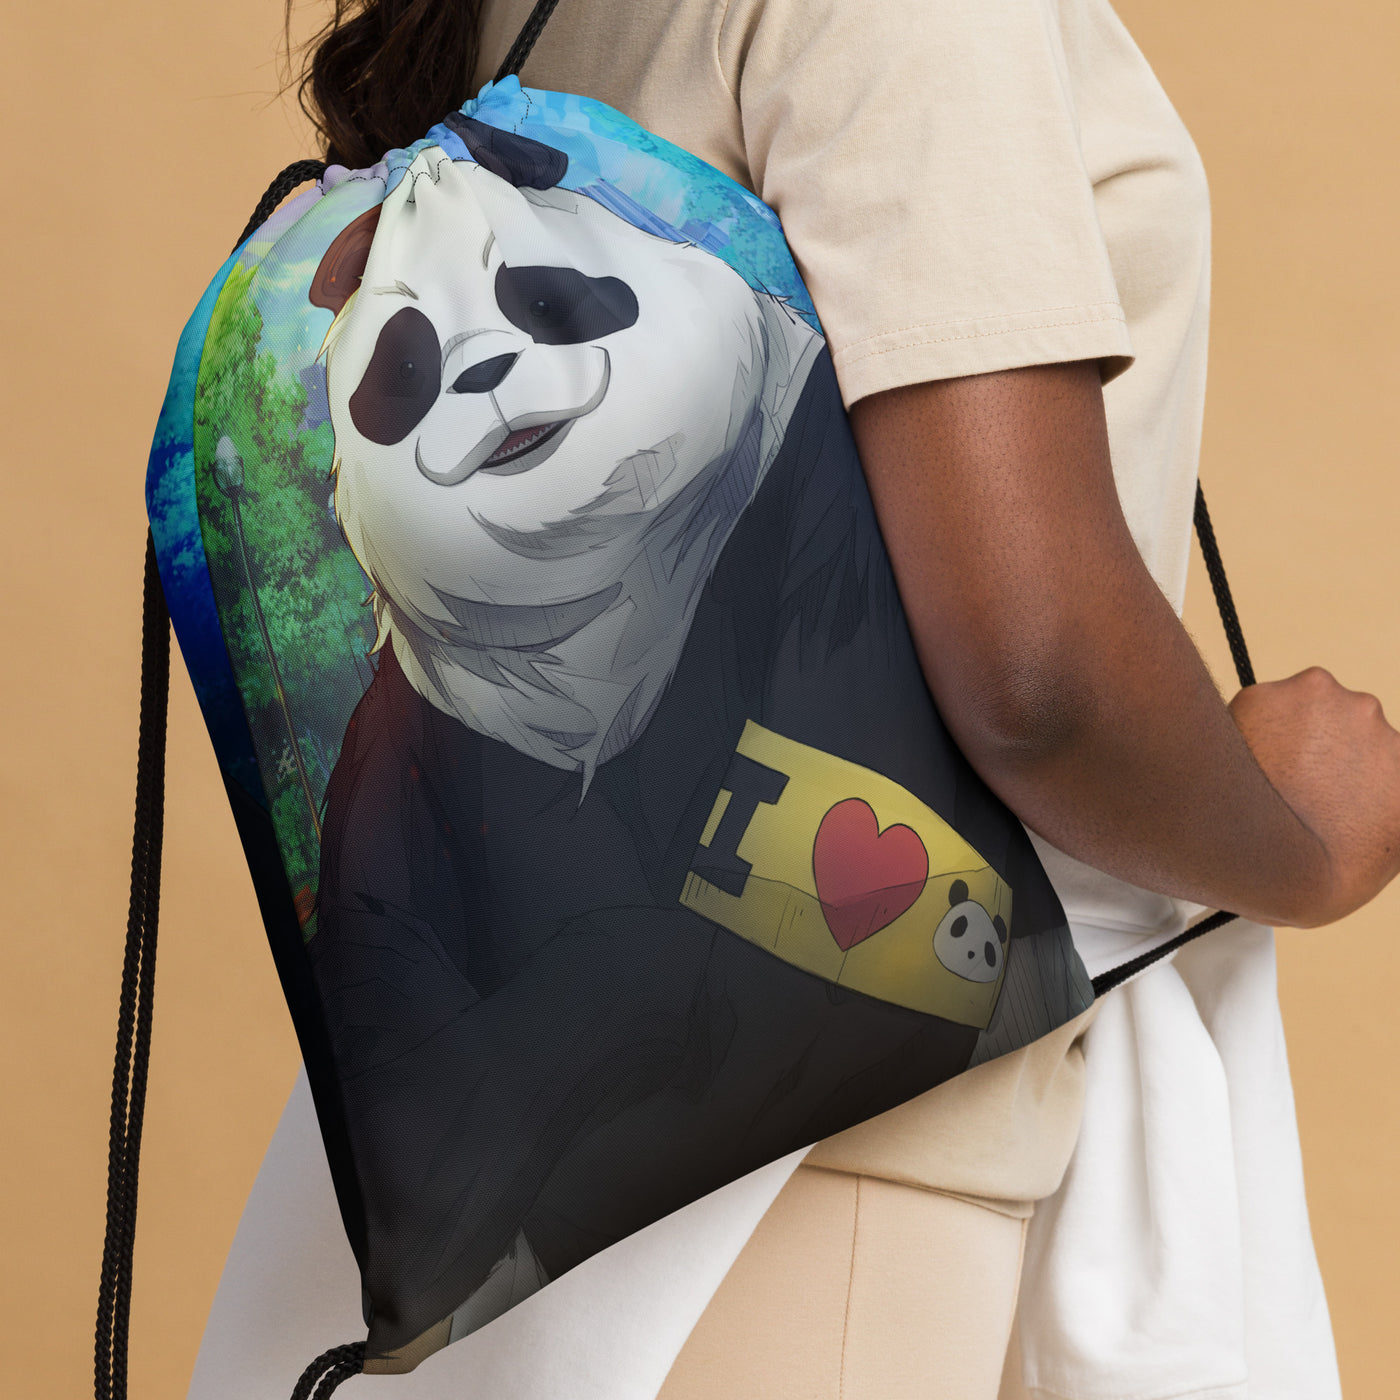 JJK Panda Drawstring Bag